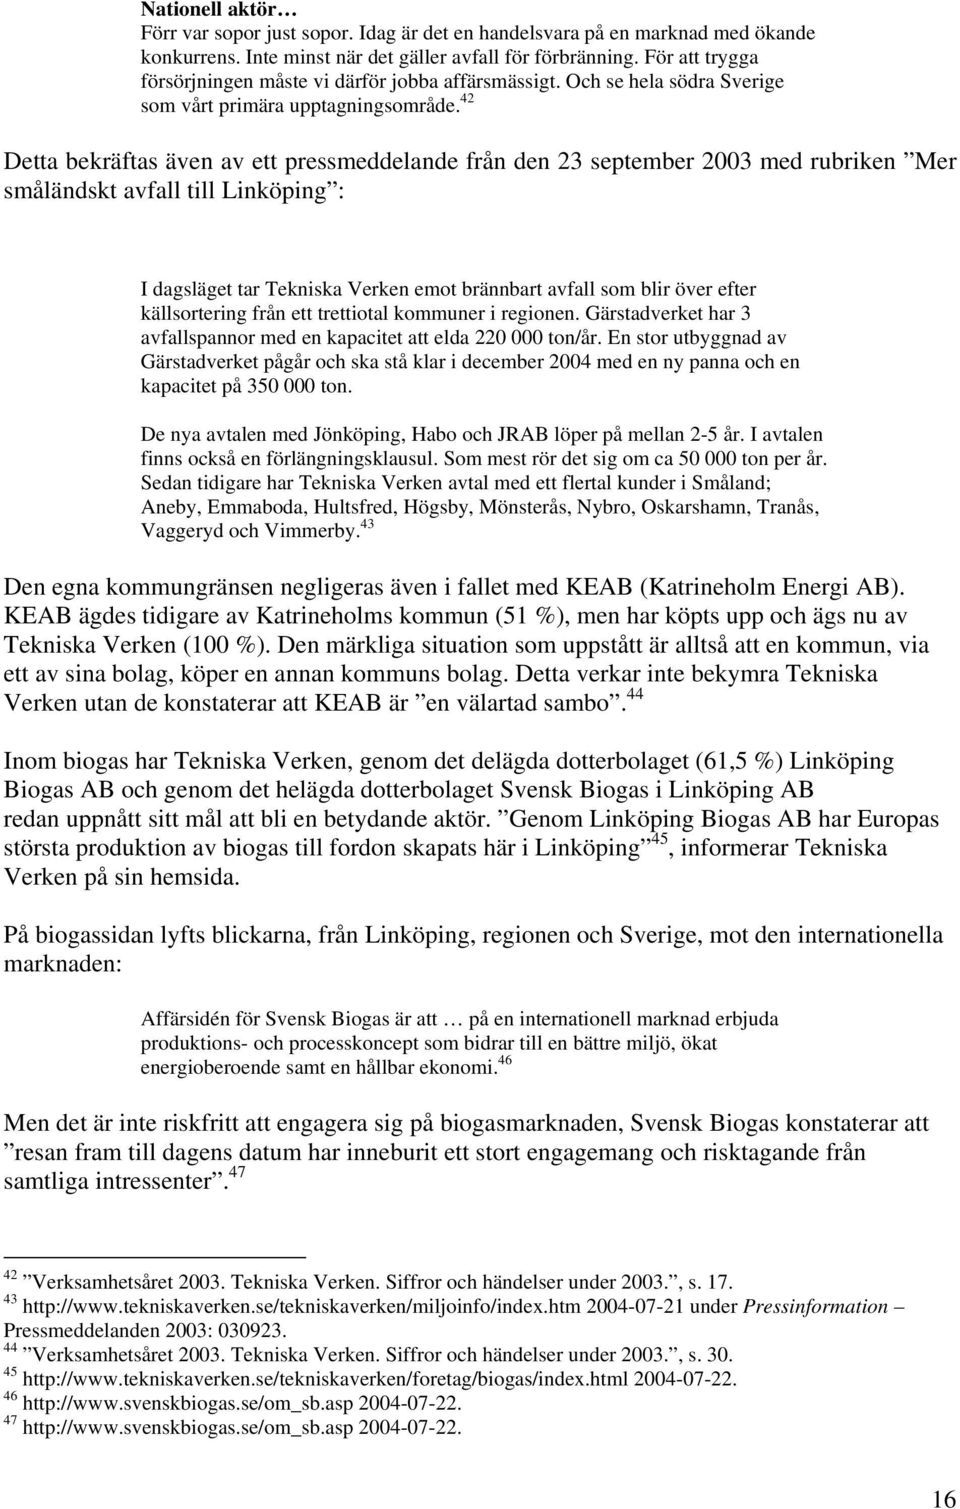 42 Detta bekräftas även av ett pressmeddelande från den 23 september 2003 med rubriken Mer småländskt avfall till Linköping : I dagsläget tar Tekniska Verken emot brännbart avfall som blir över efter